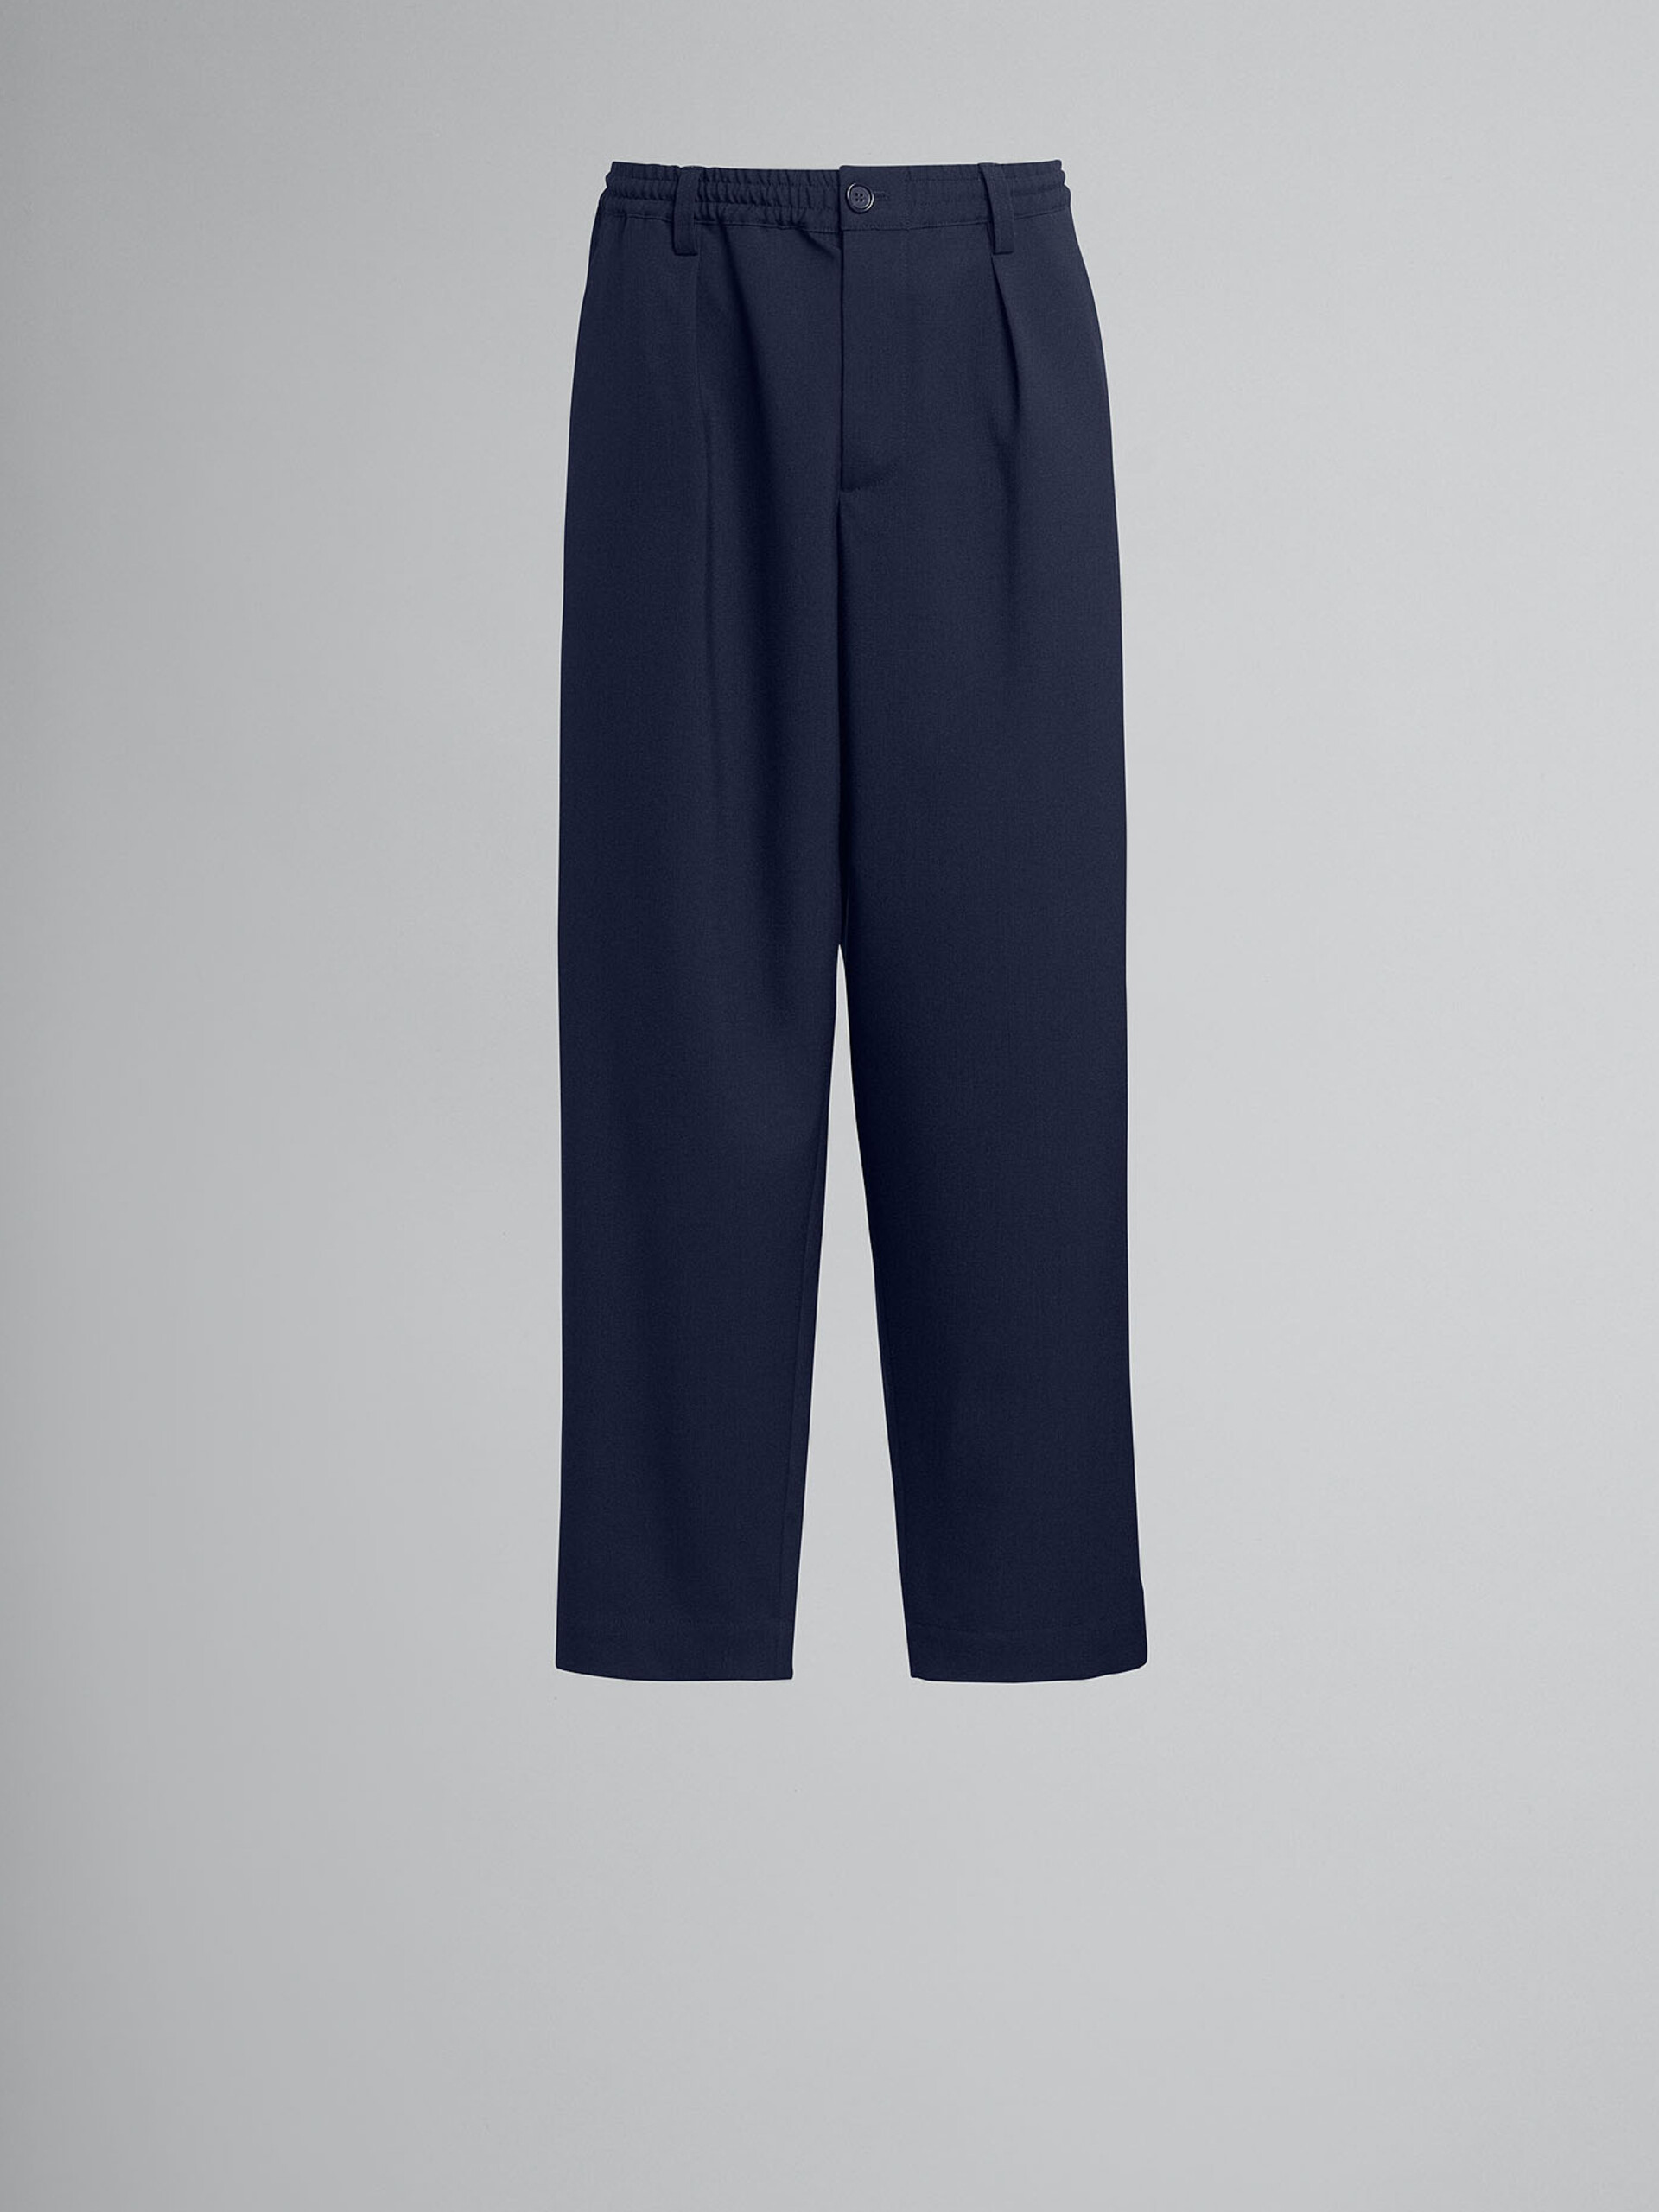 Pantalon court en laine tropicale bleue - Pantalons - Image 1